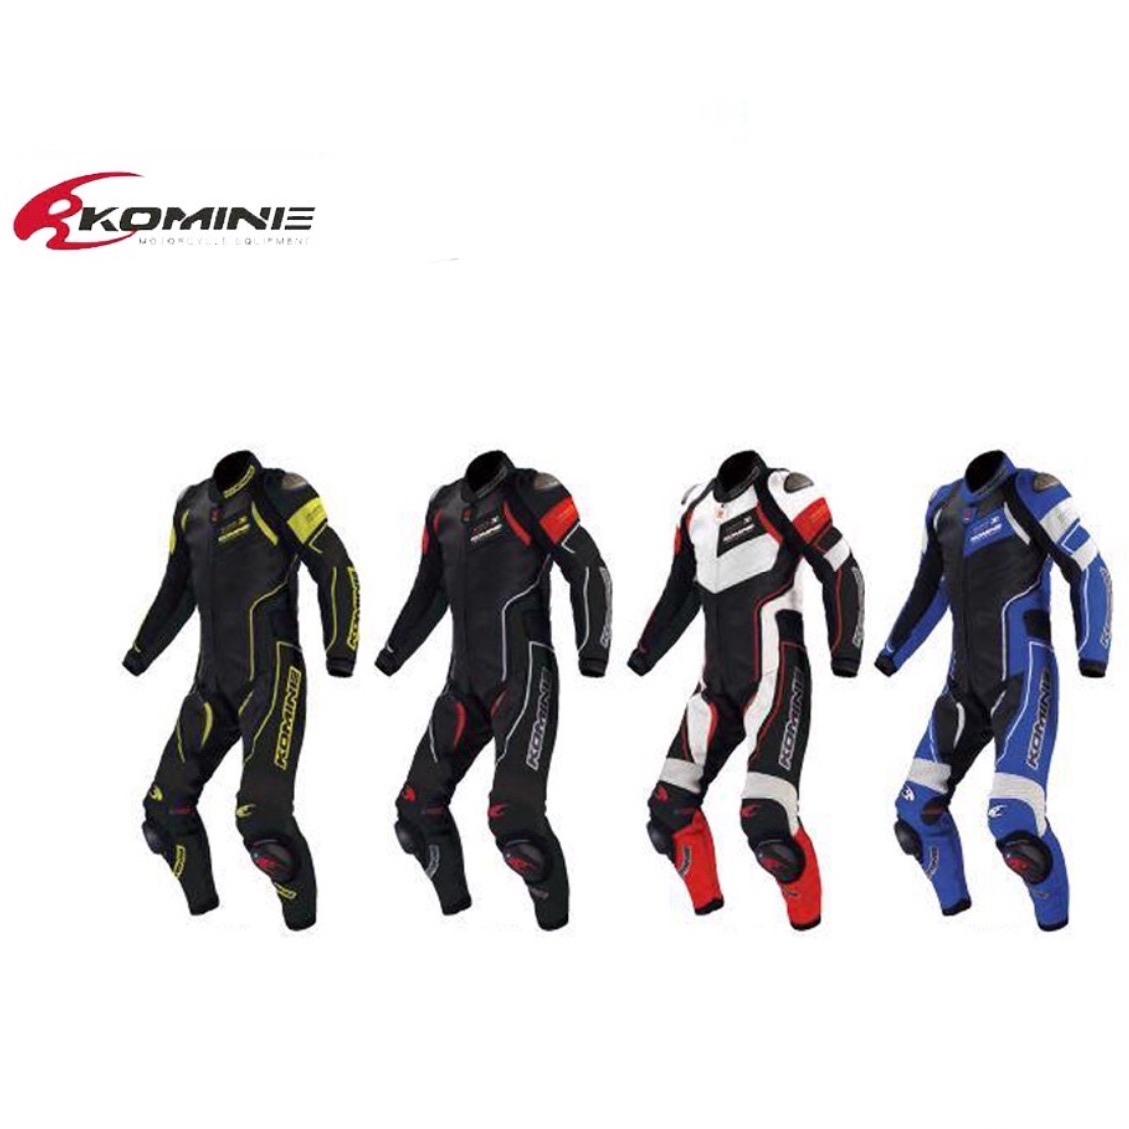 ชุดแข่งรถจักรยานยนต์ทางเรียบ KOMINE ชุดหนัง รุ่น S-49 Racing Suit